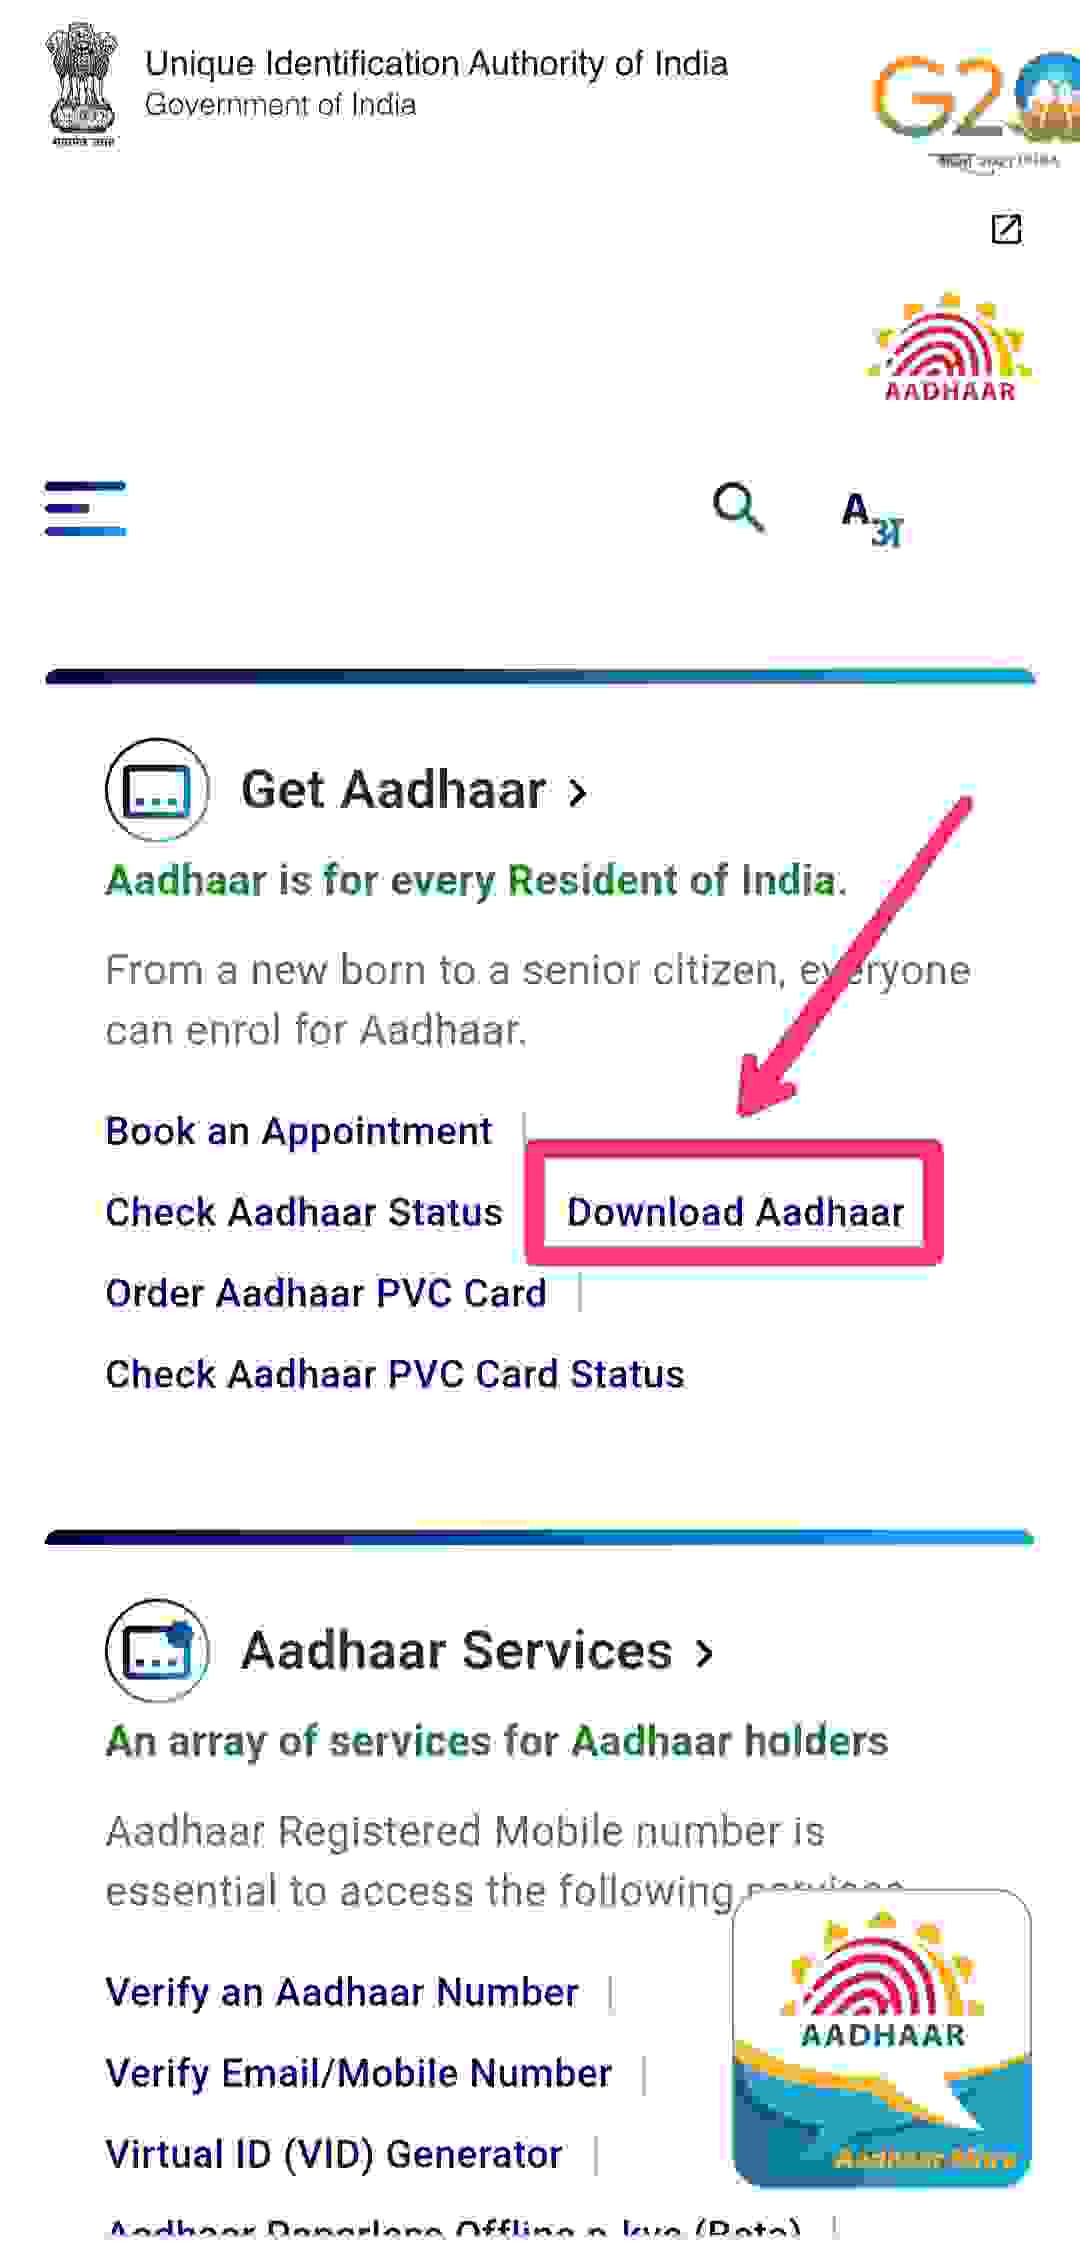 Aadhar-Official-website